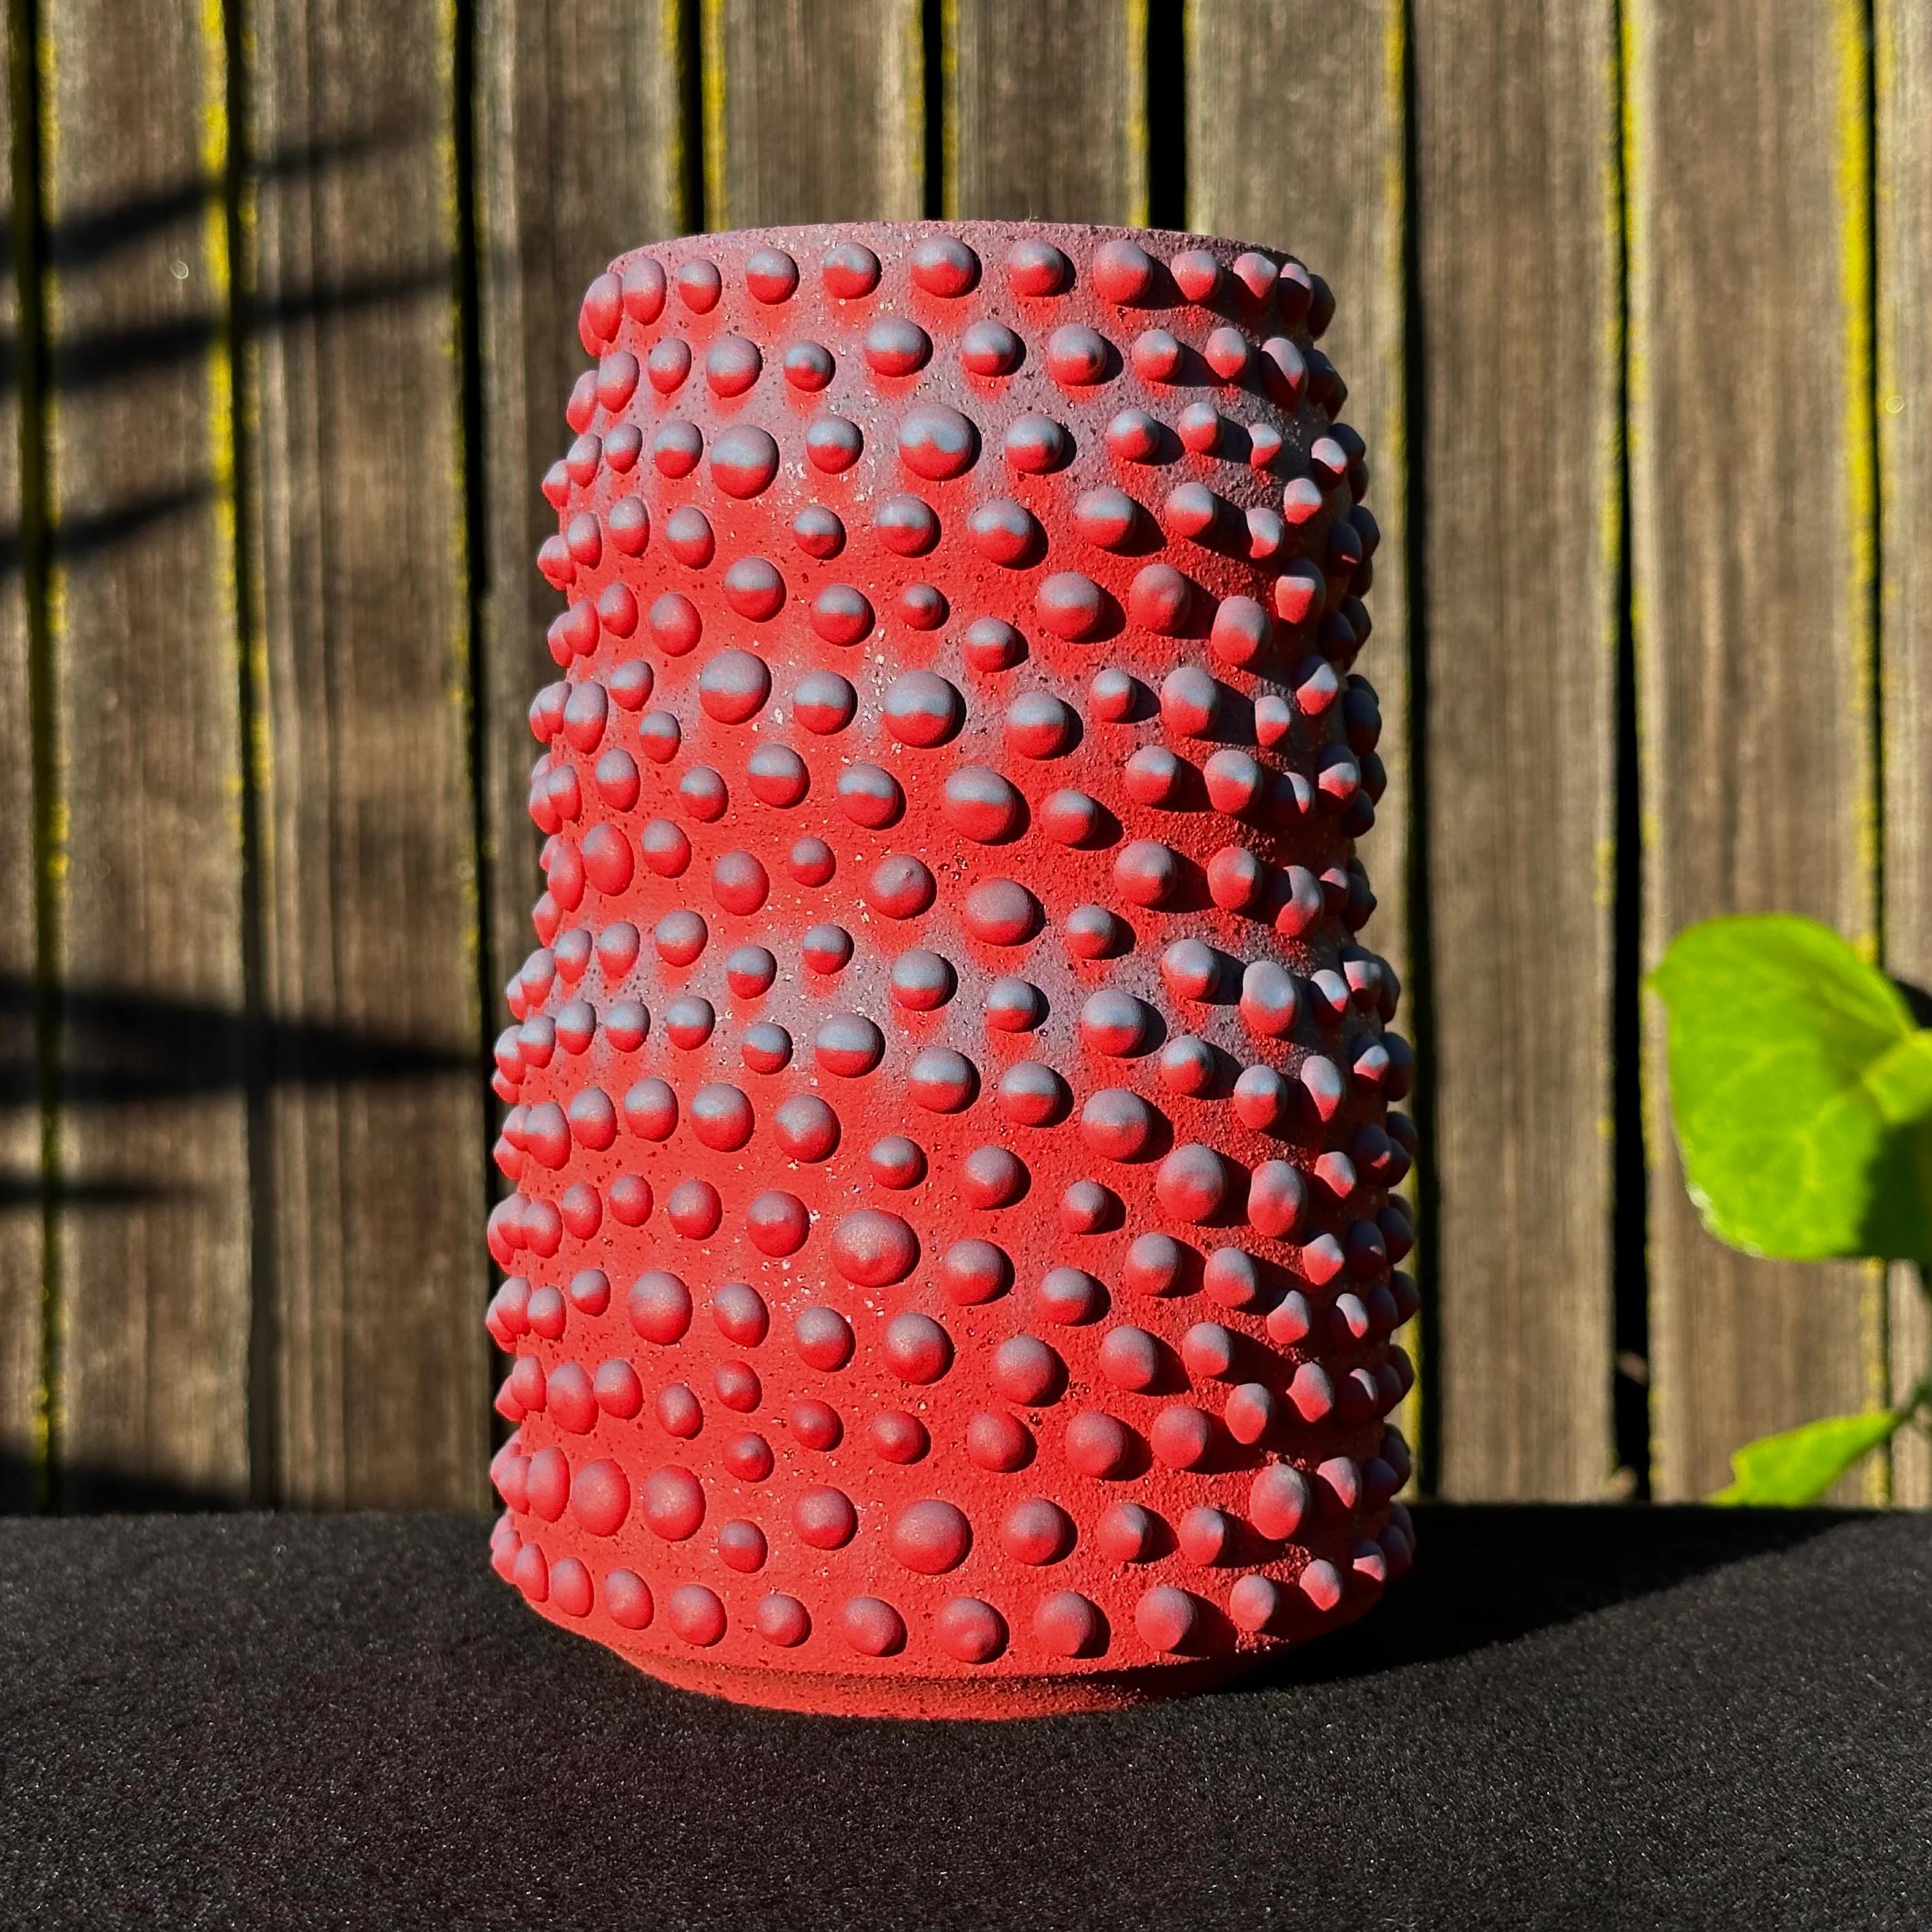 Diese vom Künstler Justin Kiene aus Oakland entworfenen und hergestellten organischen Pflanzgefäße und Vasen sind von den Formen der natürlichen und mikroskopischen Welt inspiriert.

Jedes Stück wird von Hand gedreht und glasiert, was es in Ton,